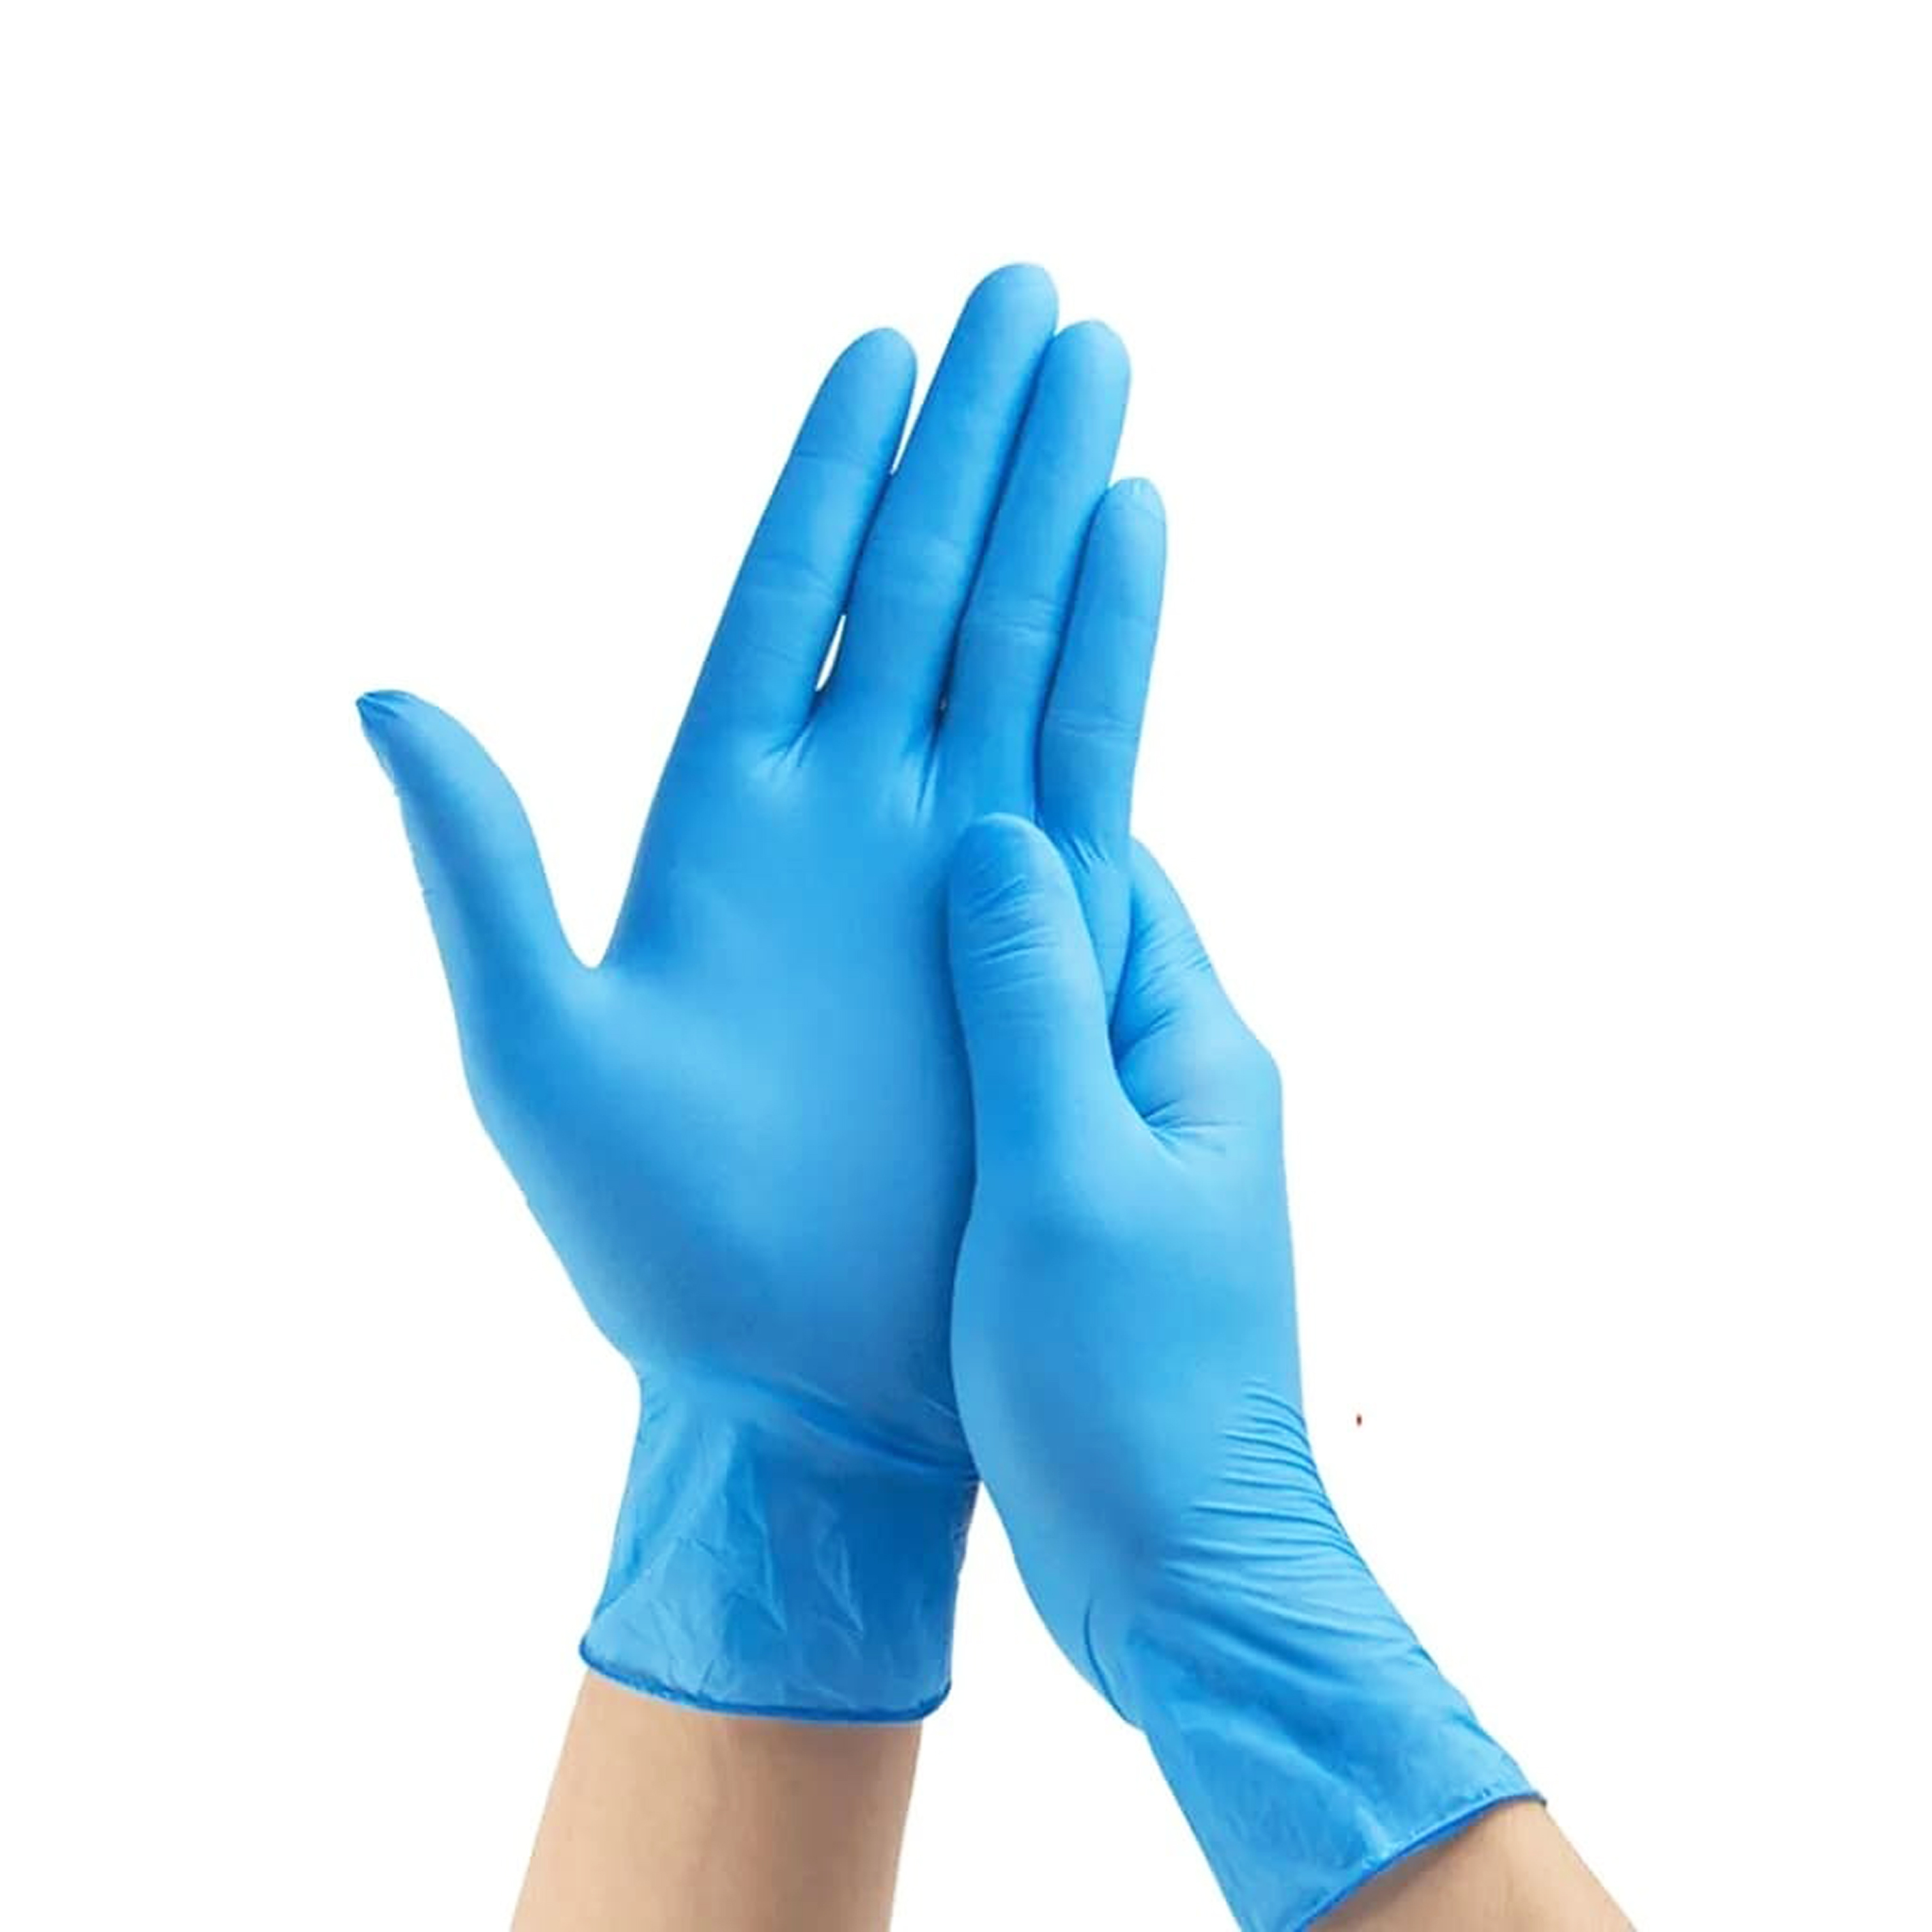 Перчатки нитровиниловые голубые размер M 100шт ALPHA